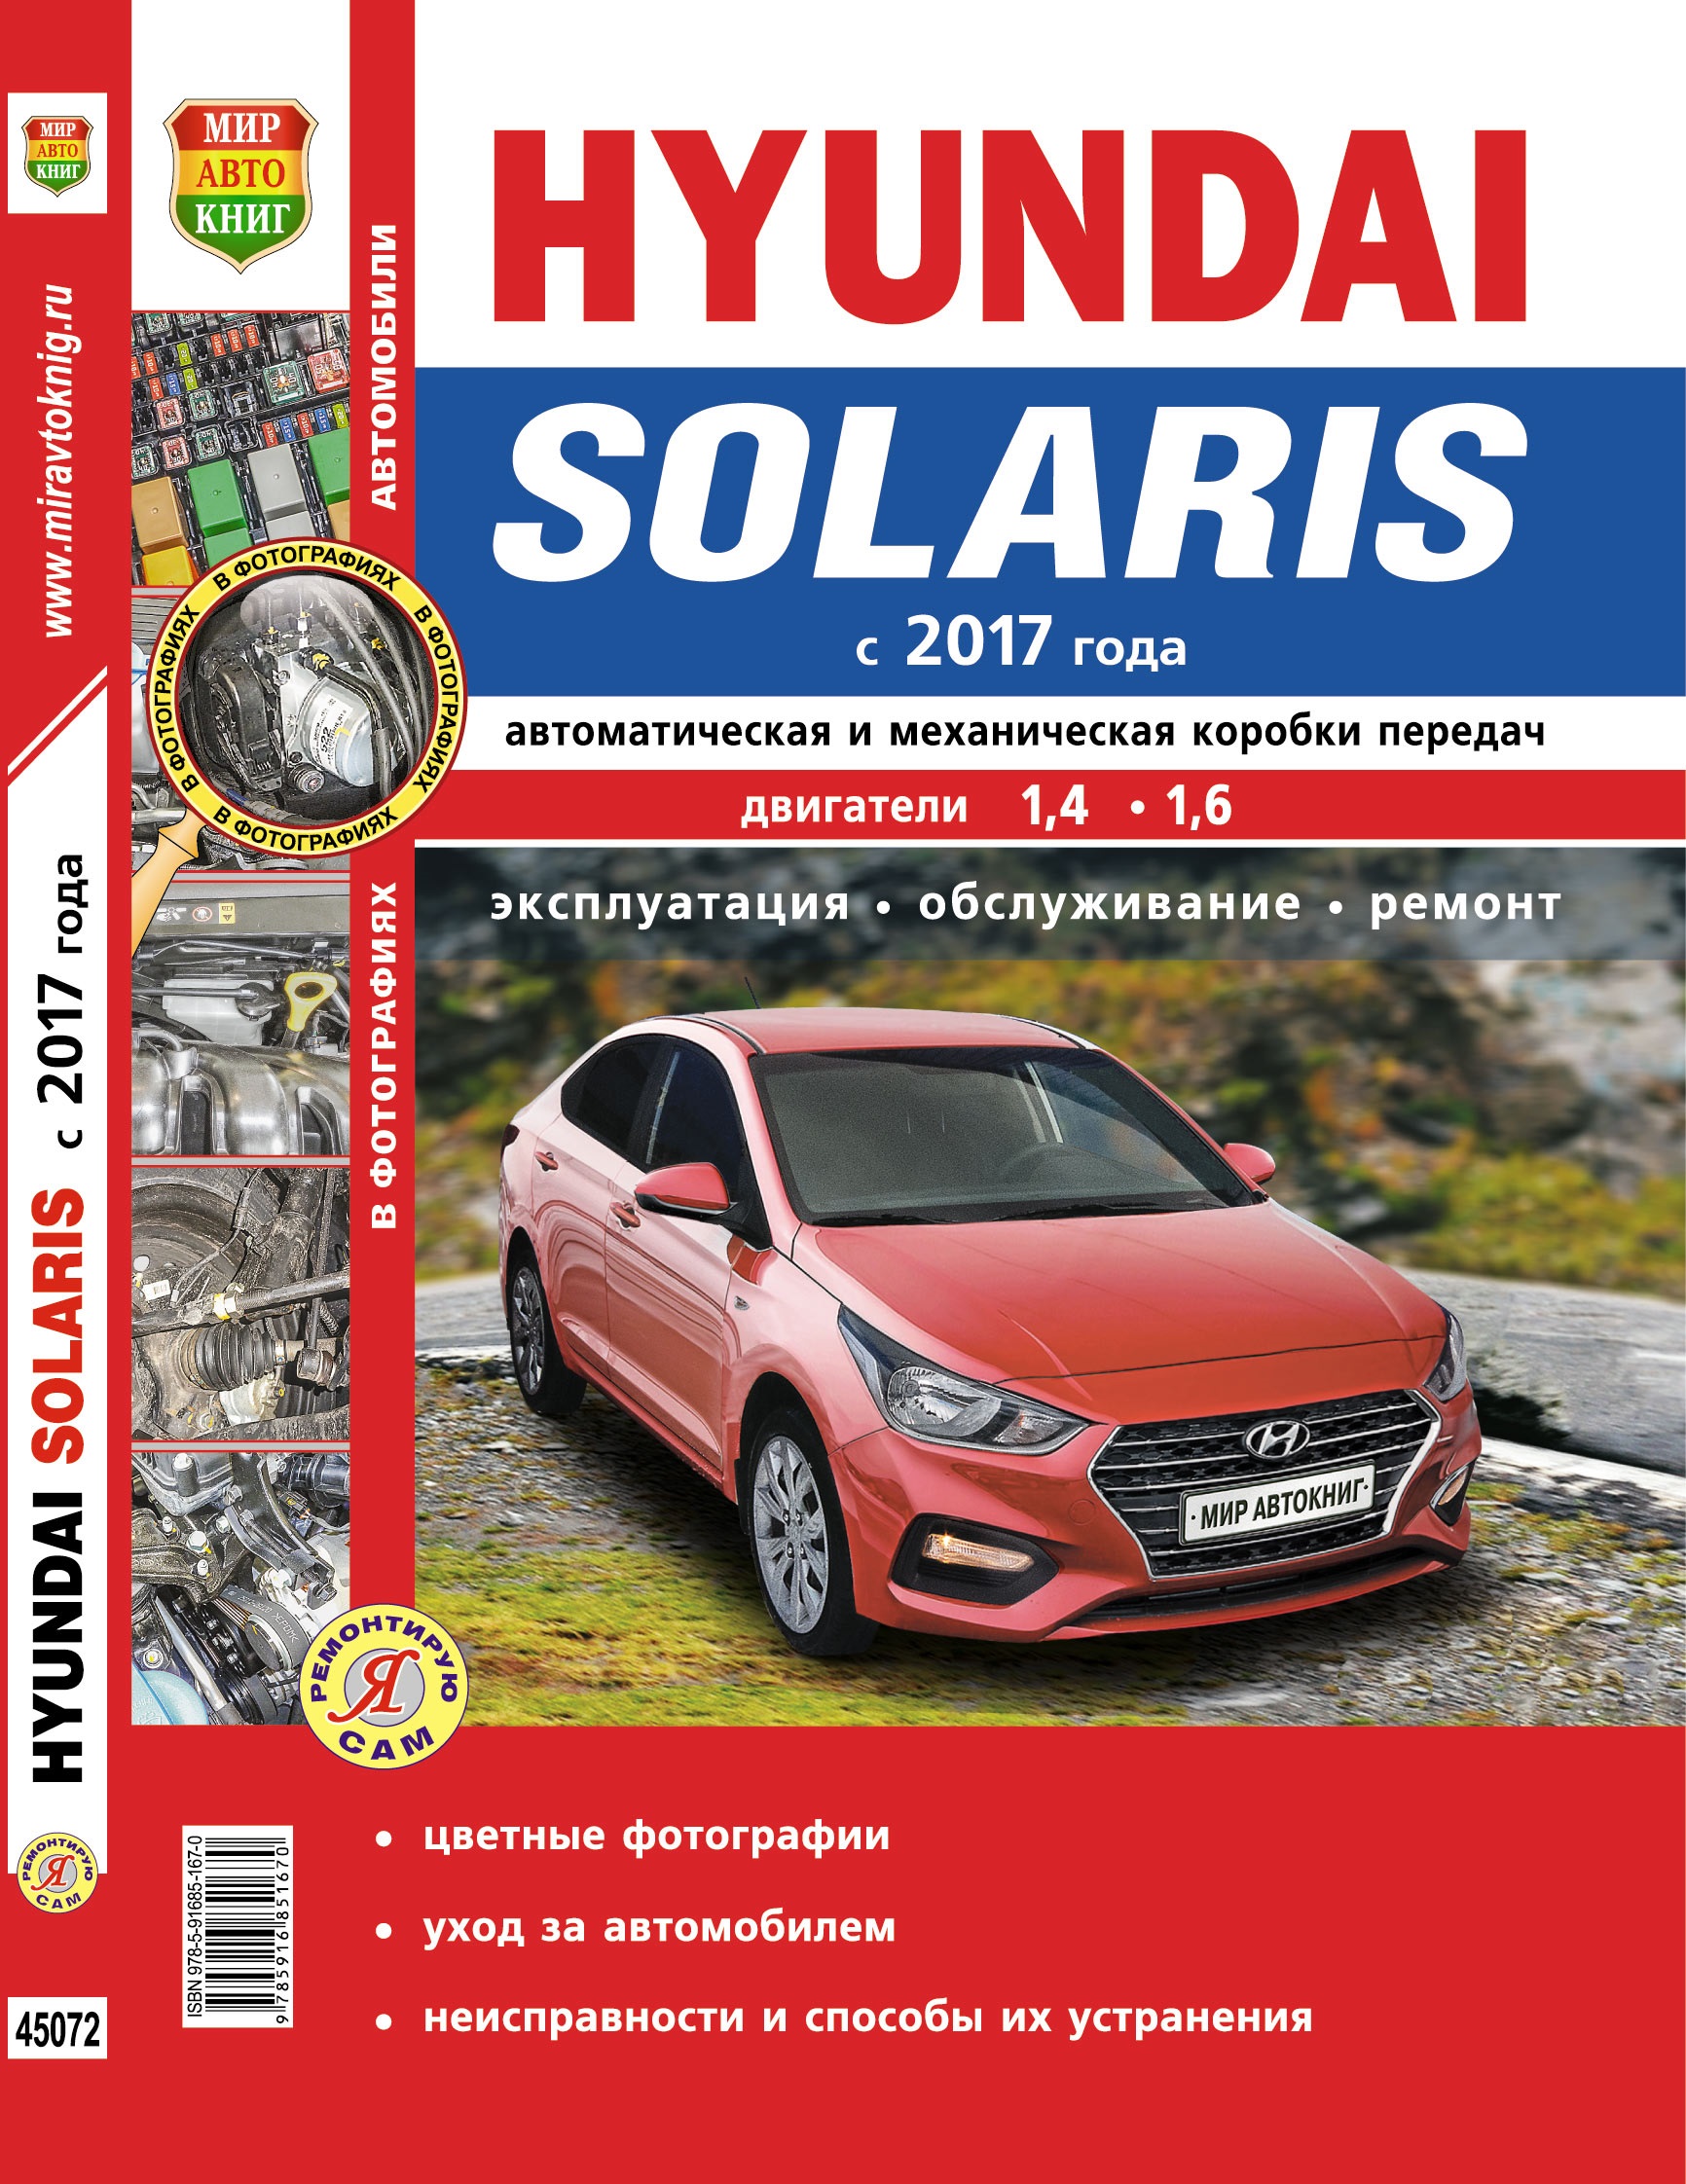 Книга HYUNDAI SOLARIS-2 (Хендай Солярис-2) с 2017 бензин Пособие по ремонту. Цветные фотографии